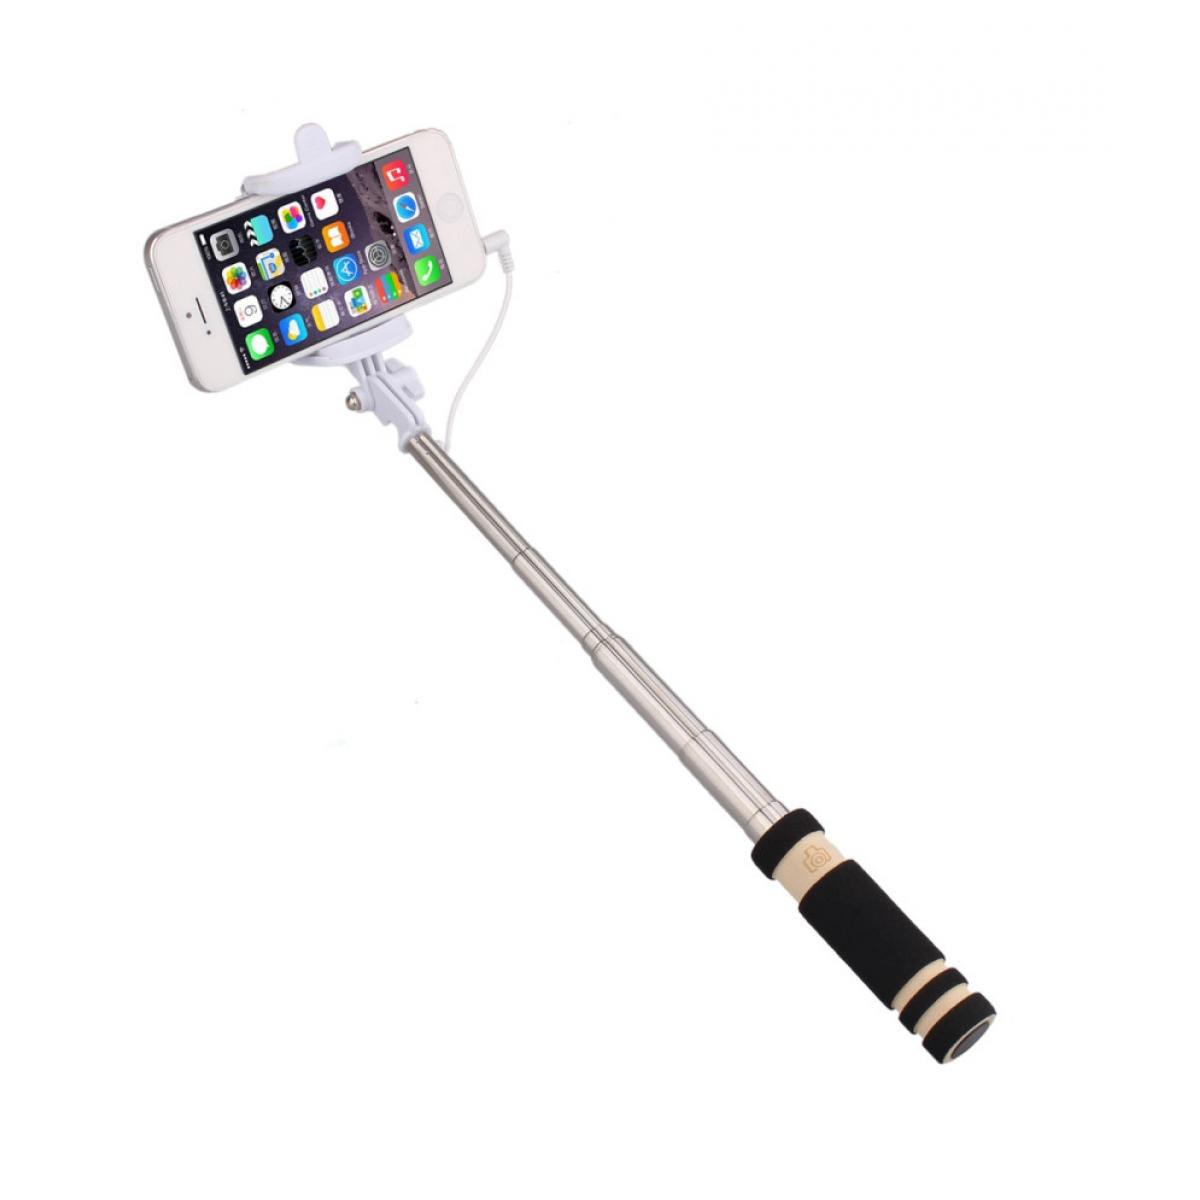 Shot - Mini Perche Selfie pour SAMSUNG Galaxy XCover Pro Smartphone avec Cable Jack Selfie Stick Android IOS Reglable Bouton Photo (NOIR) - Autres accessoires smartphone